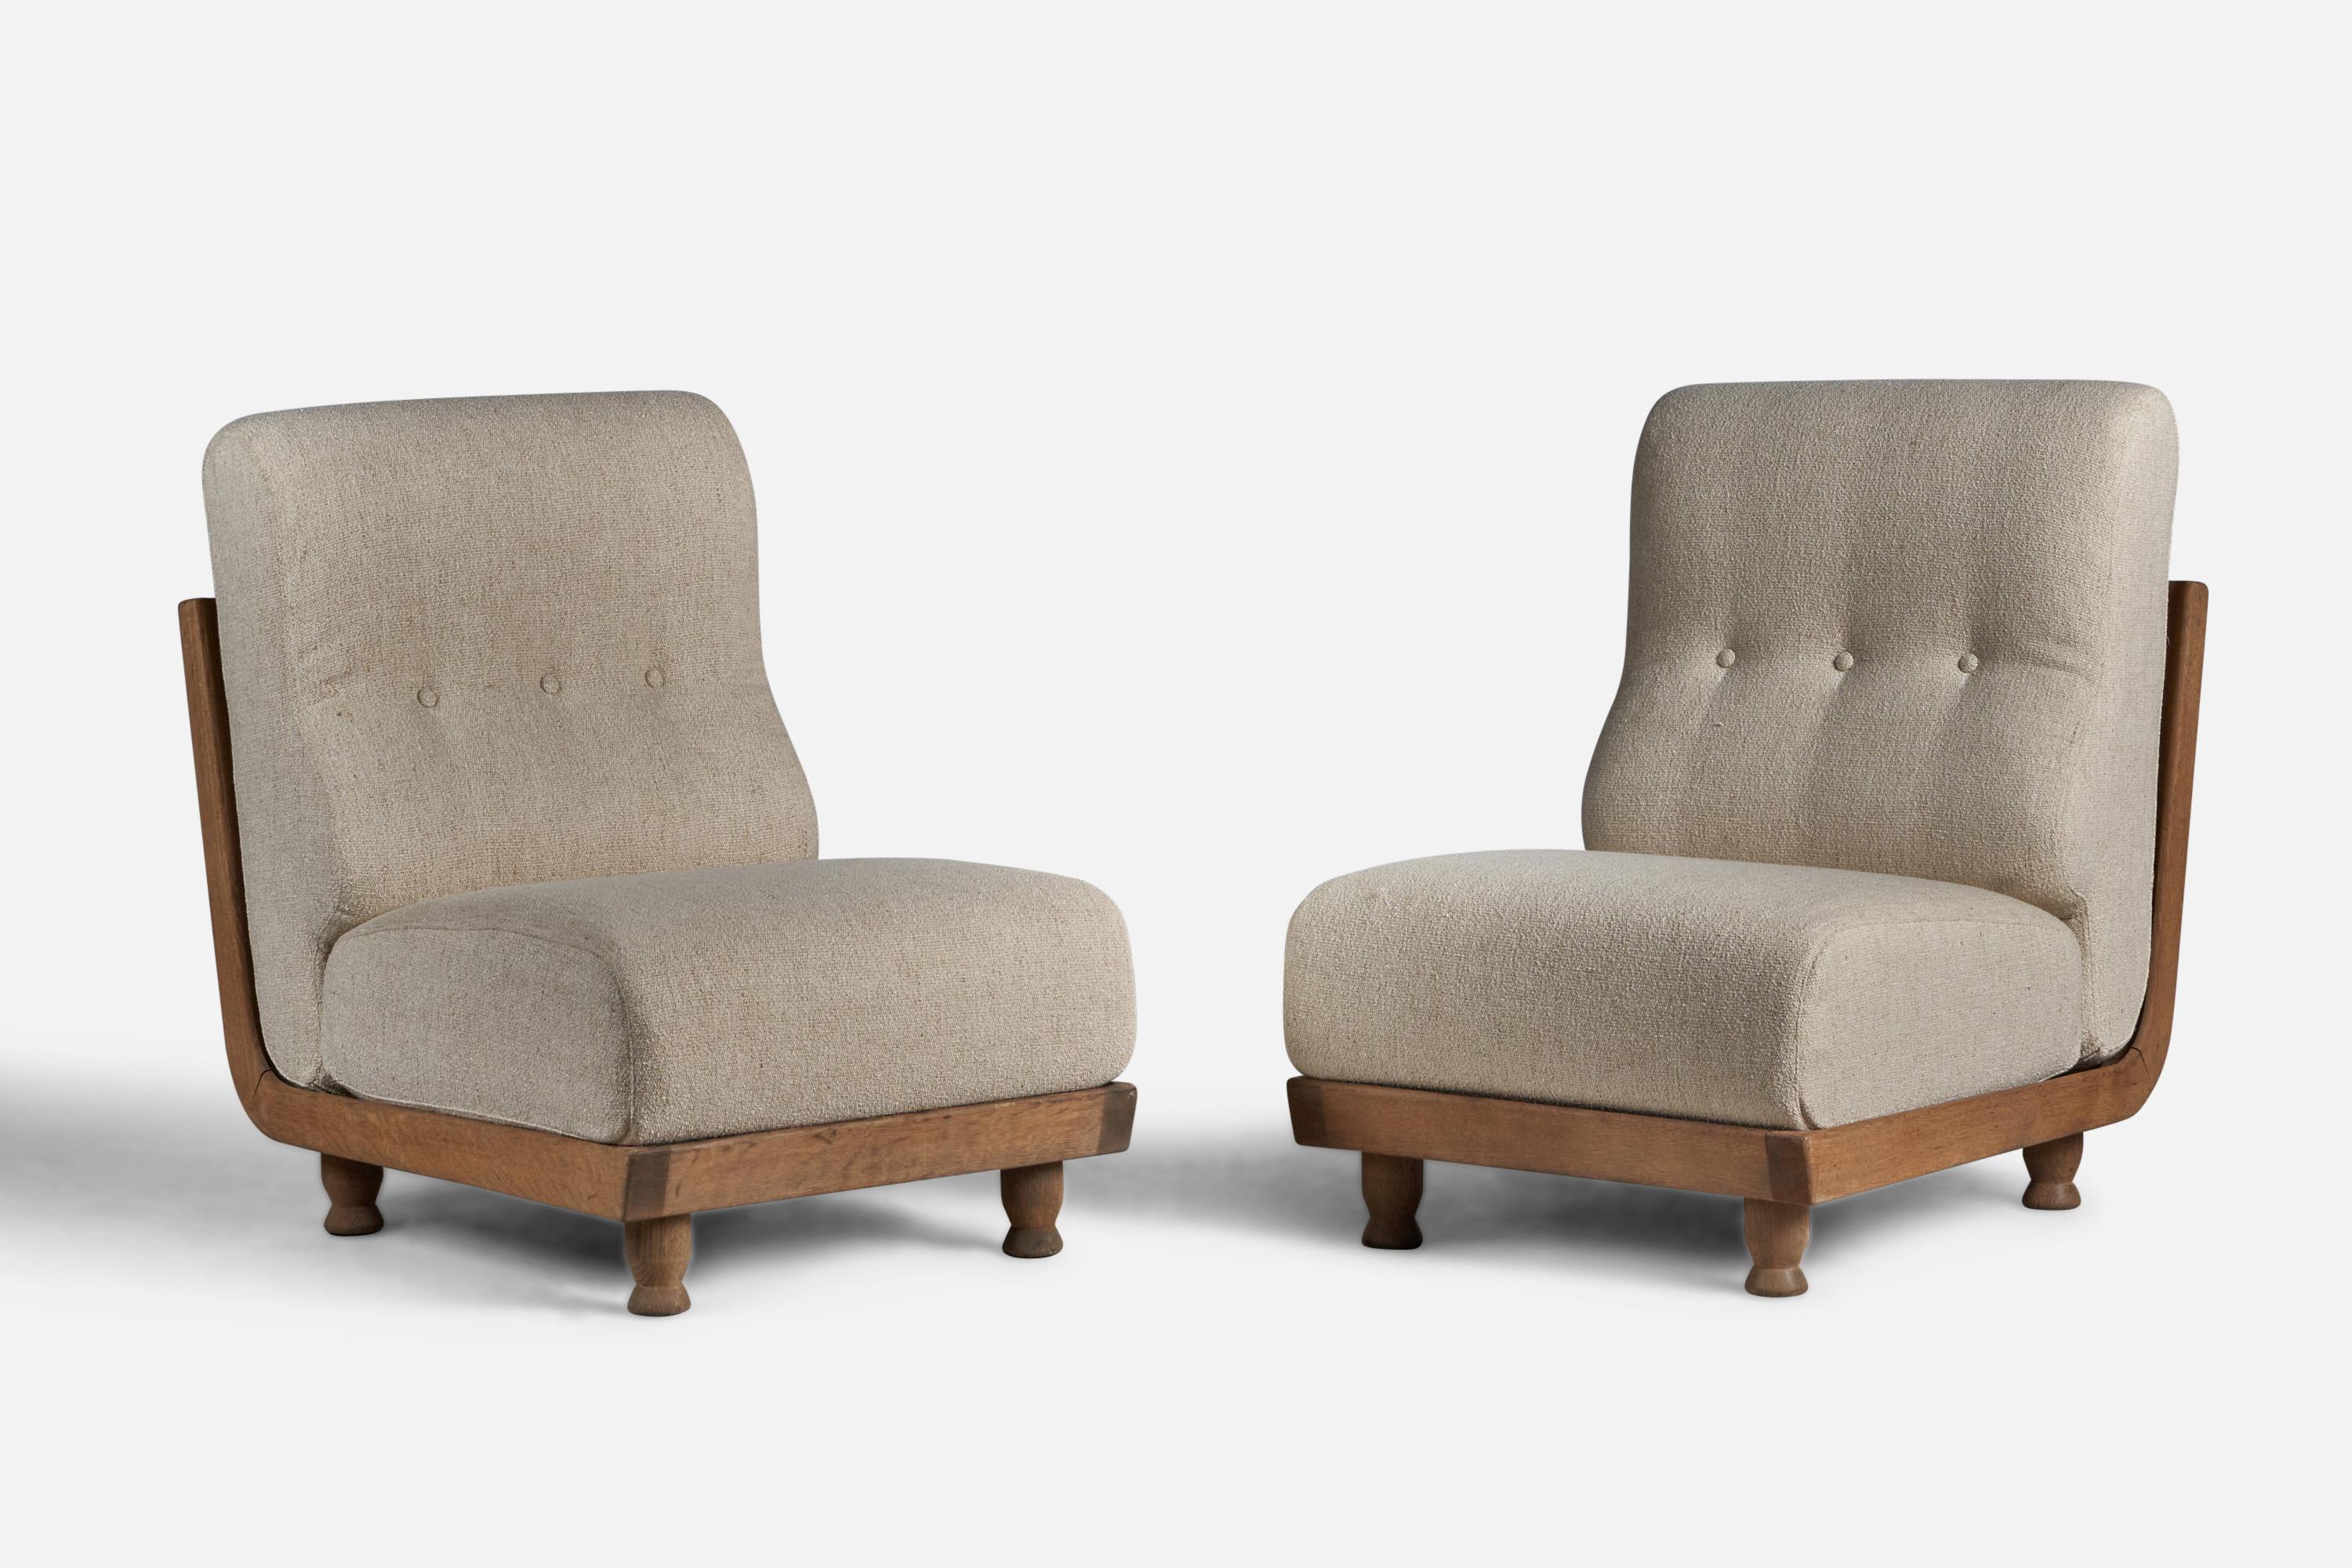 Paire de chaises de salon ou de pantoufles en tissu beige et en chêne, conçues par Robert Guillerme et Jacques Chambron, France, années 1950.

Hauteur d'assise de 16,5 pouces